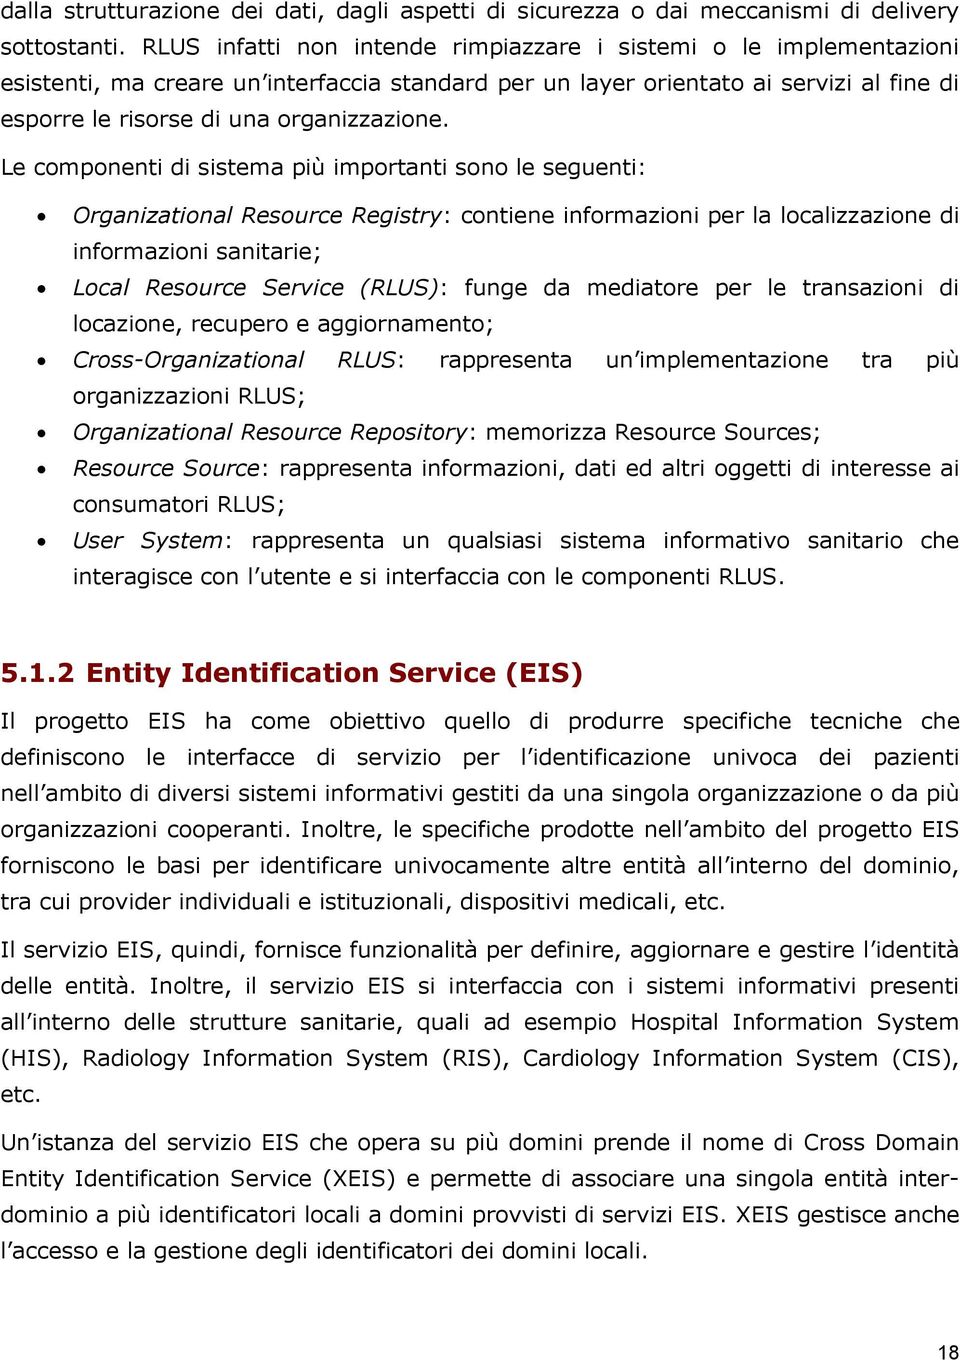 Le componenti di sistema più importanti sono le seguenti: Organizational Resource Registry: contiene informazioni per la localizzazione di informazioni sanitarie; Local Resource Service (RLUS): funge